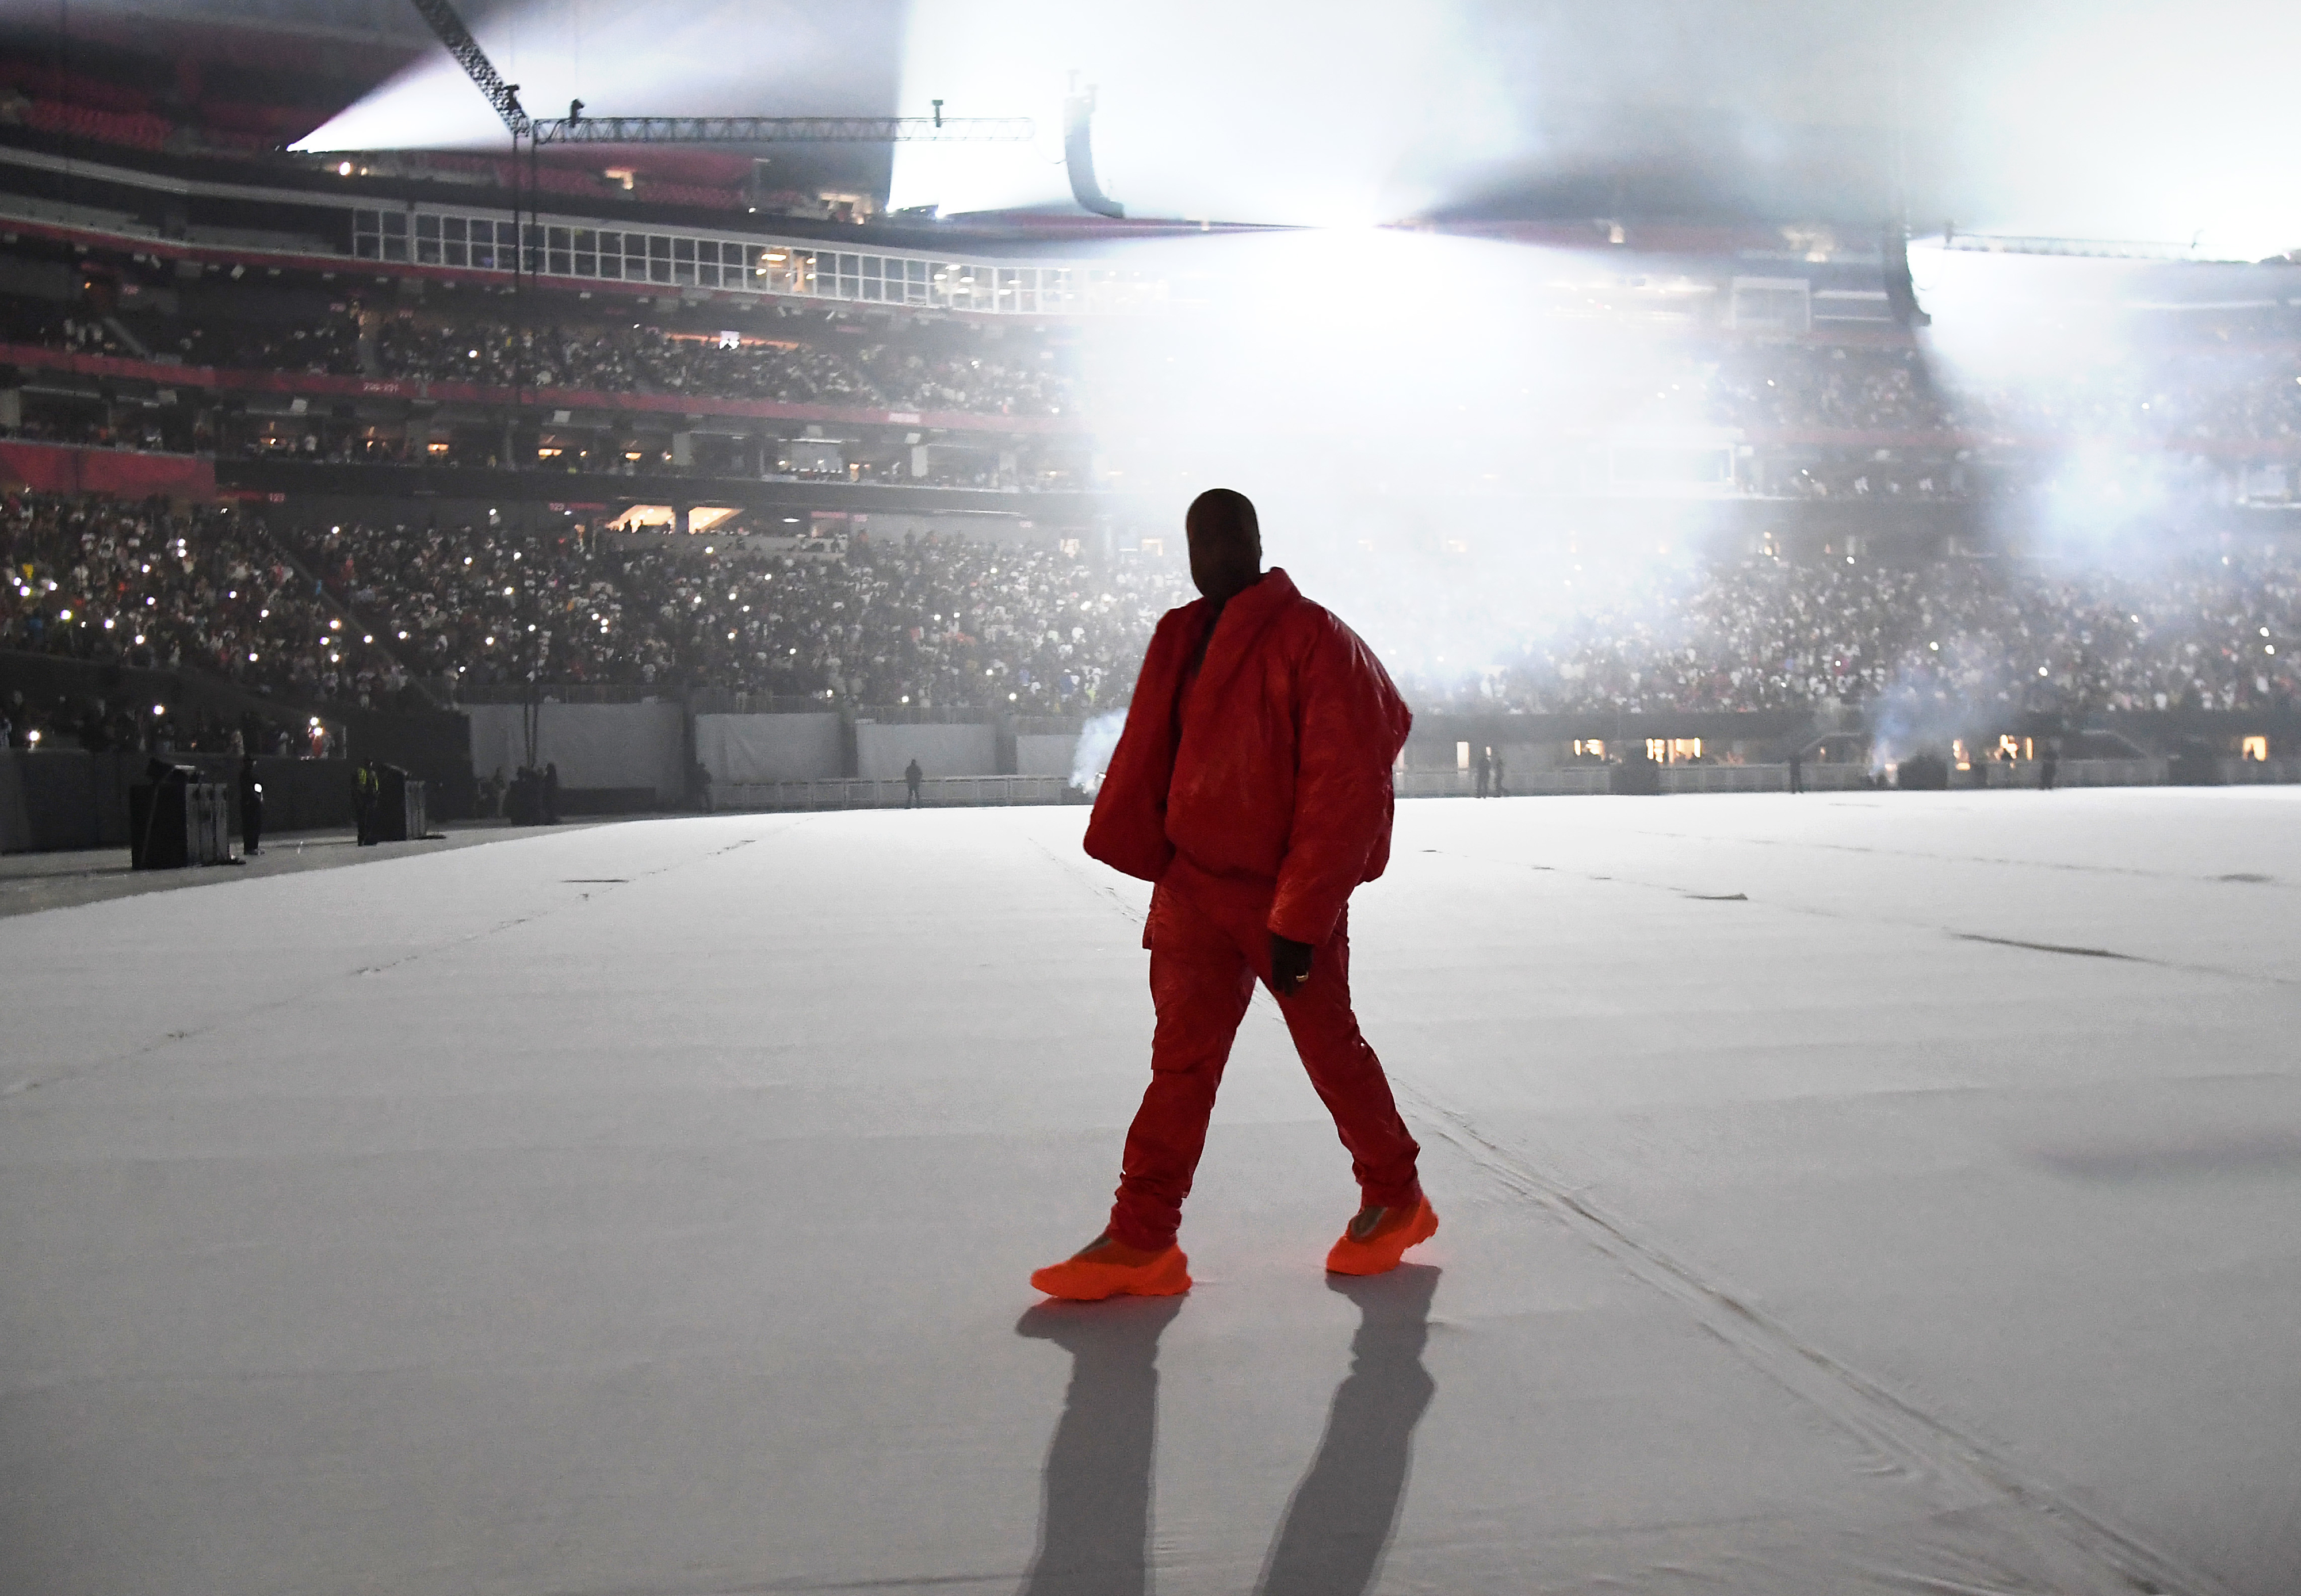 Kanye onstage